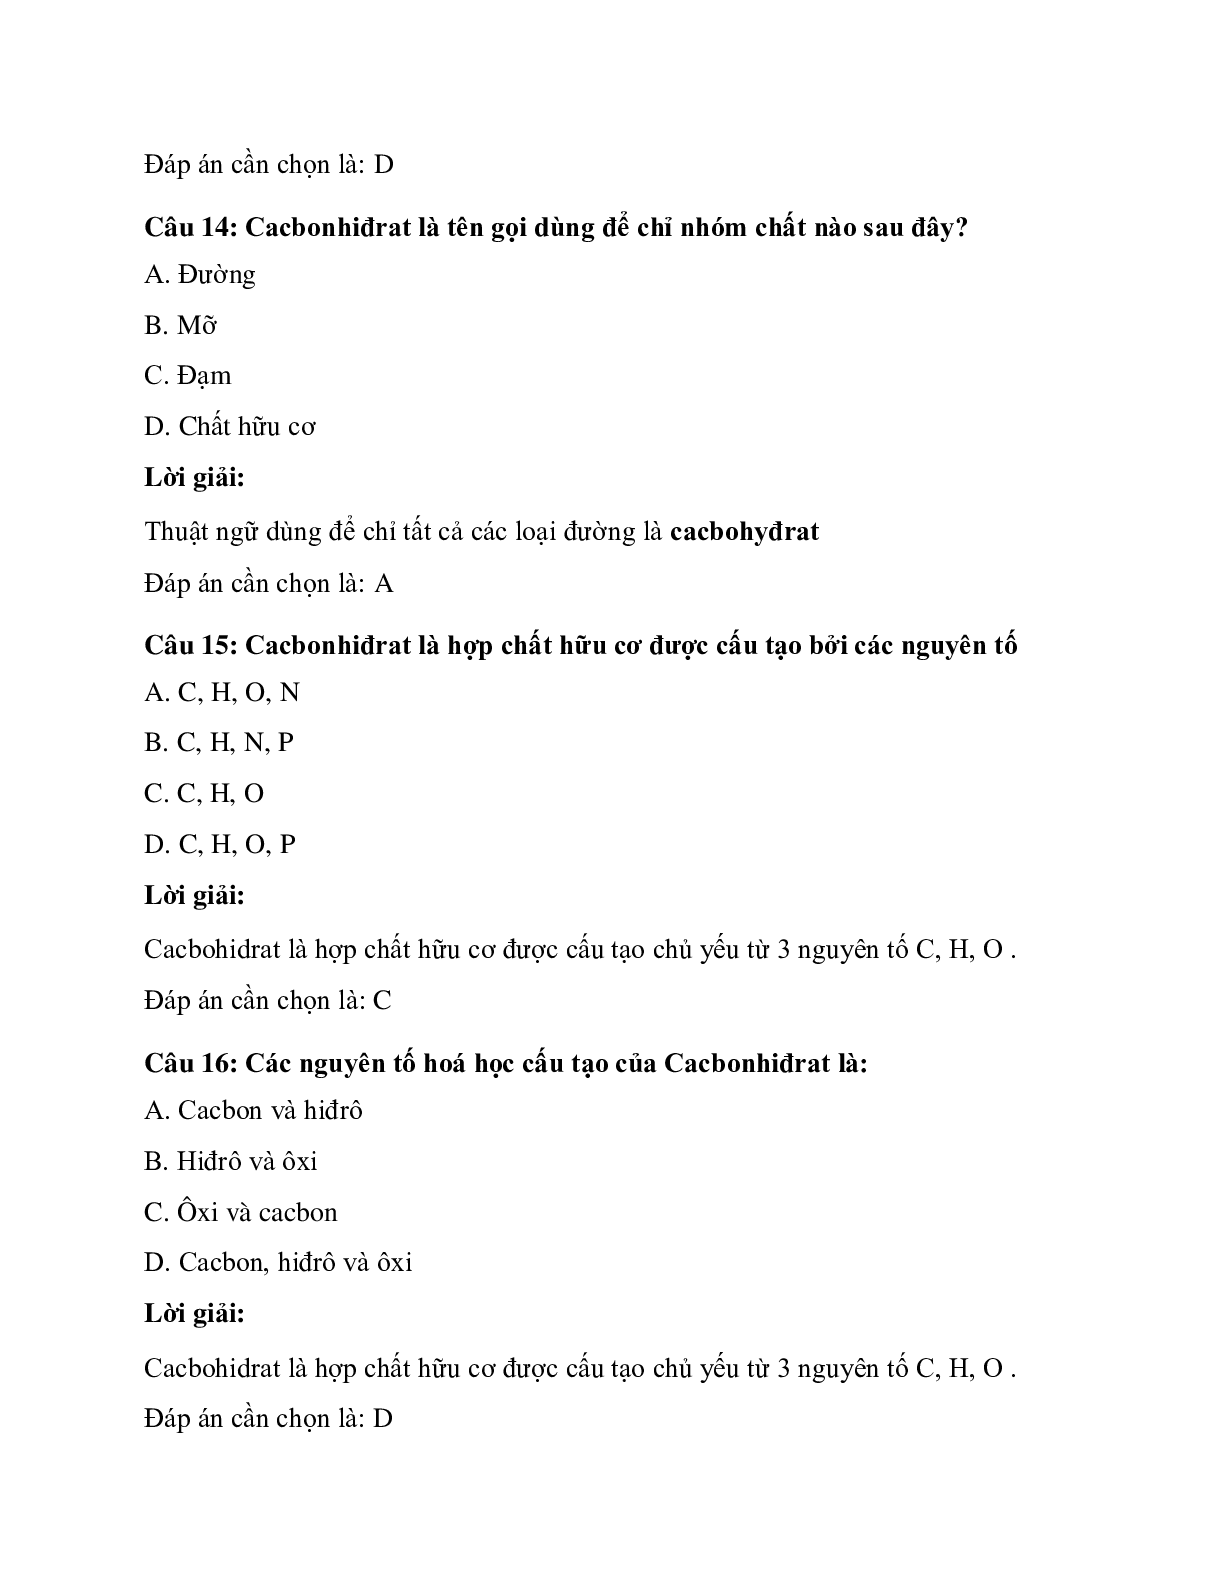 Trắc nghiệm Sinh học 10 Bài 4 có đáp án: Cacbohiđrat (trang 6)